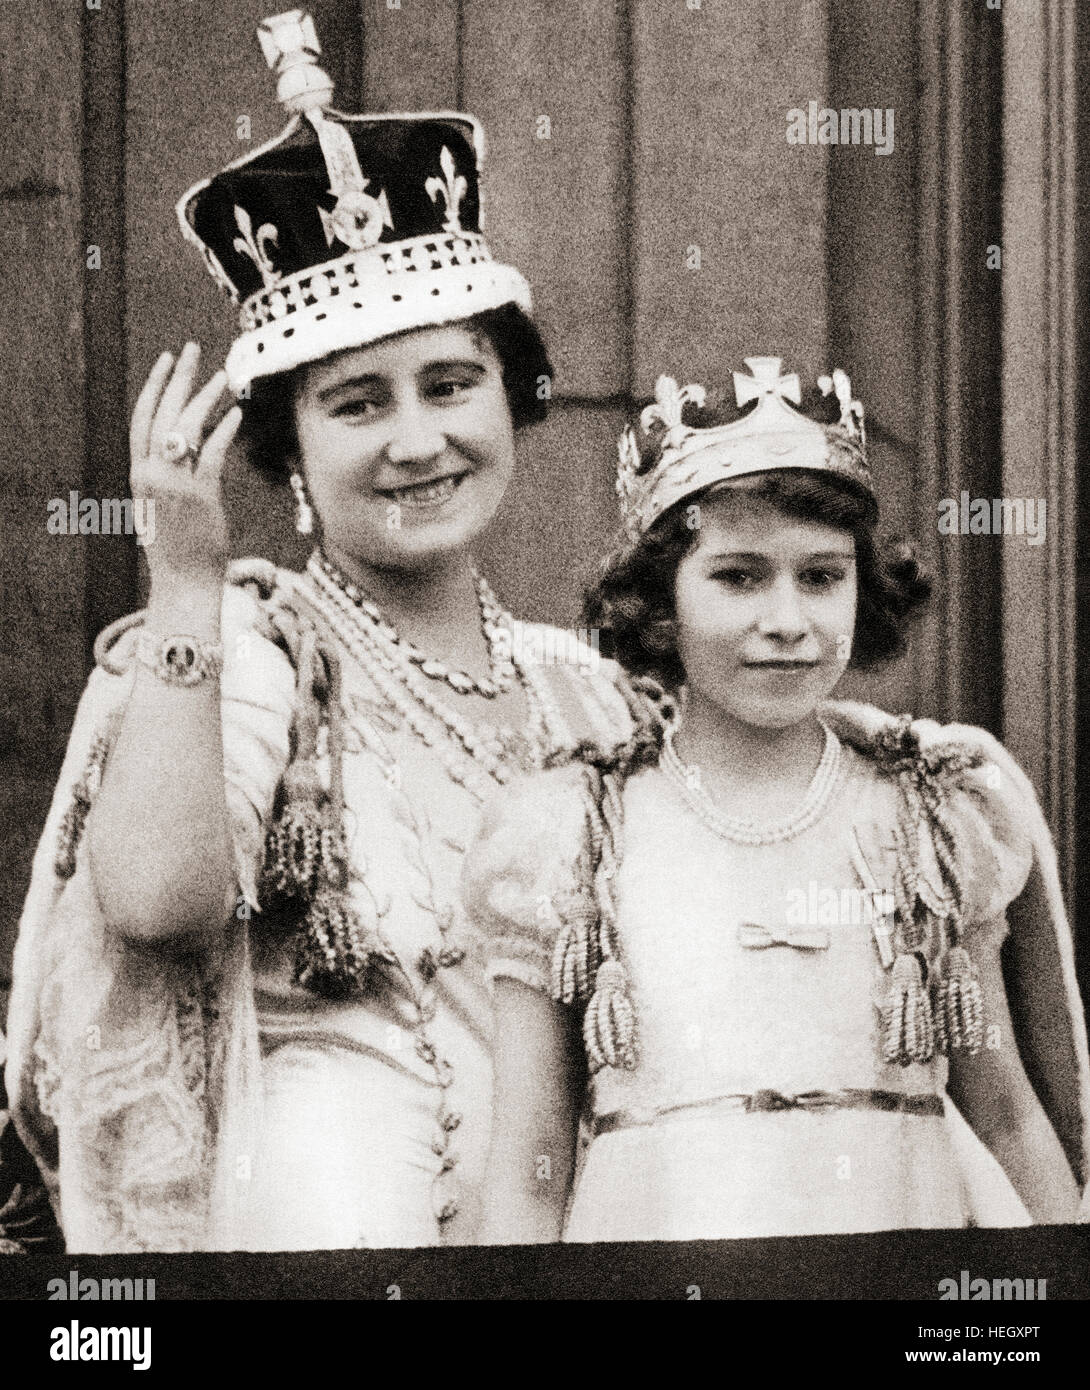 Königin Elizabeth am Tag ihrer Krönung 1936 mit ihrer Tochter Prinzessin Elizabeth auf dem Balkon des Buckingham Palace, London, England. Elizabeth Angela Marguerite Bowes-Lyon, 1900–2002. Prinzessin Elizabeth, zukünftige Königin Elizabeth II.. Elizabeth II, 1926 - 2022. Königin des Vereinigten Königreichs, Kanada, Australien und Neuseeland. Stockfoto